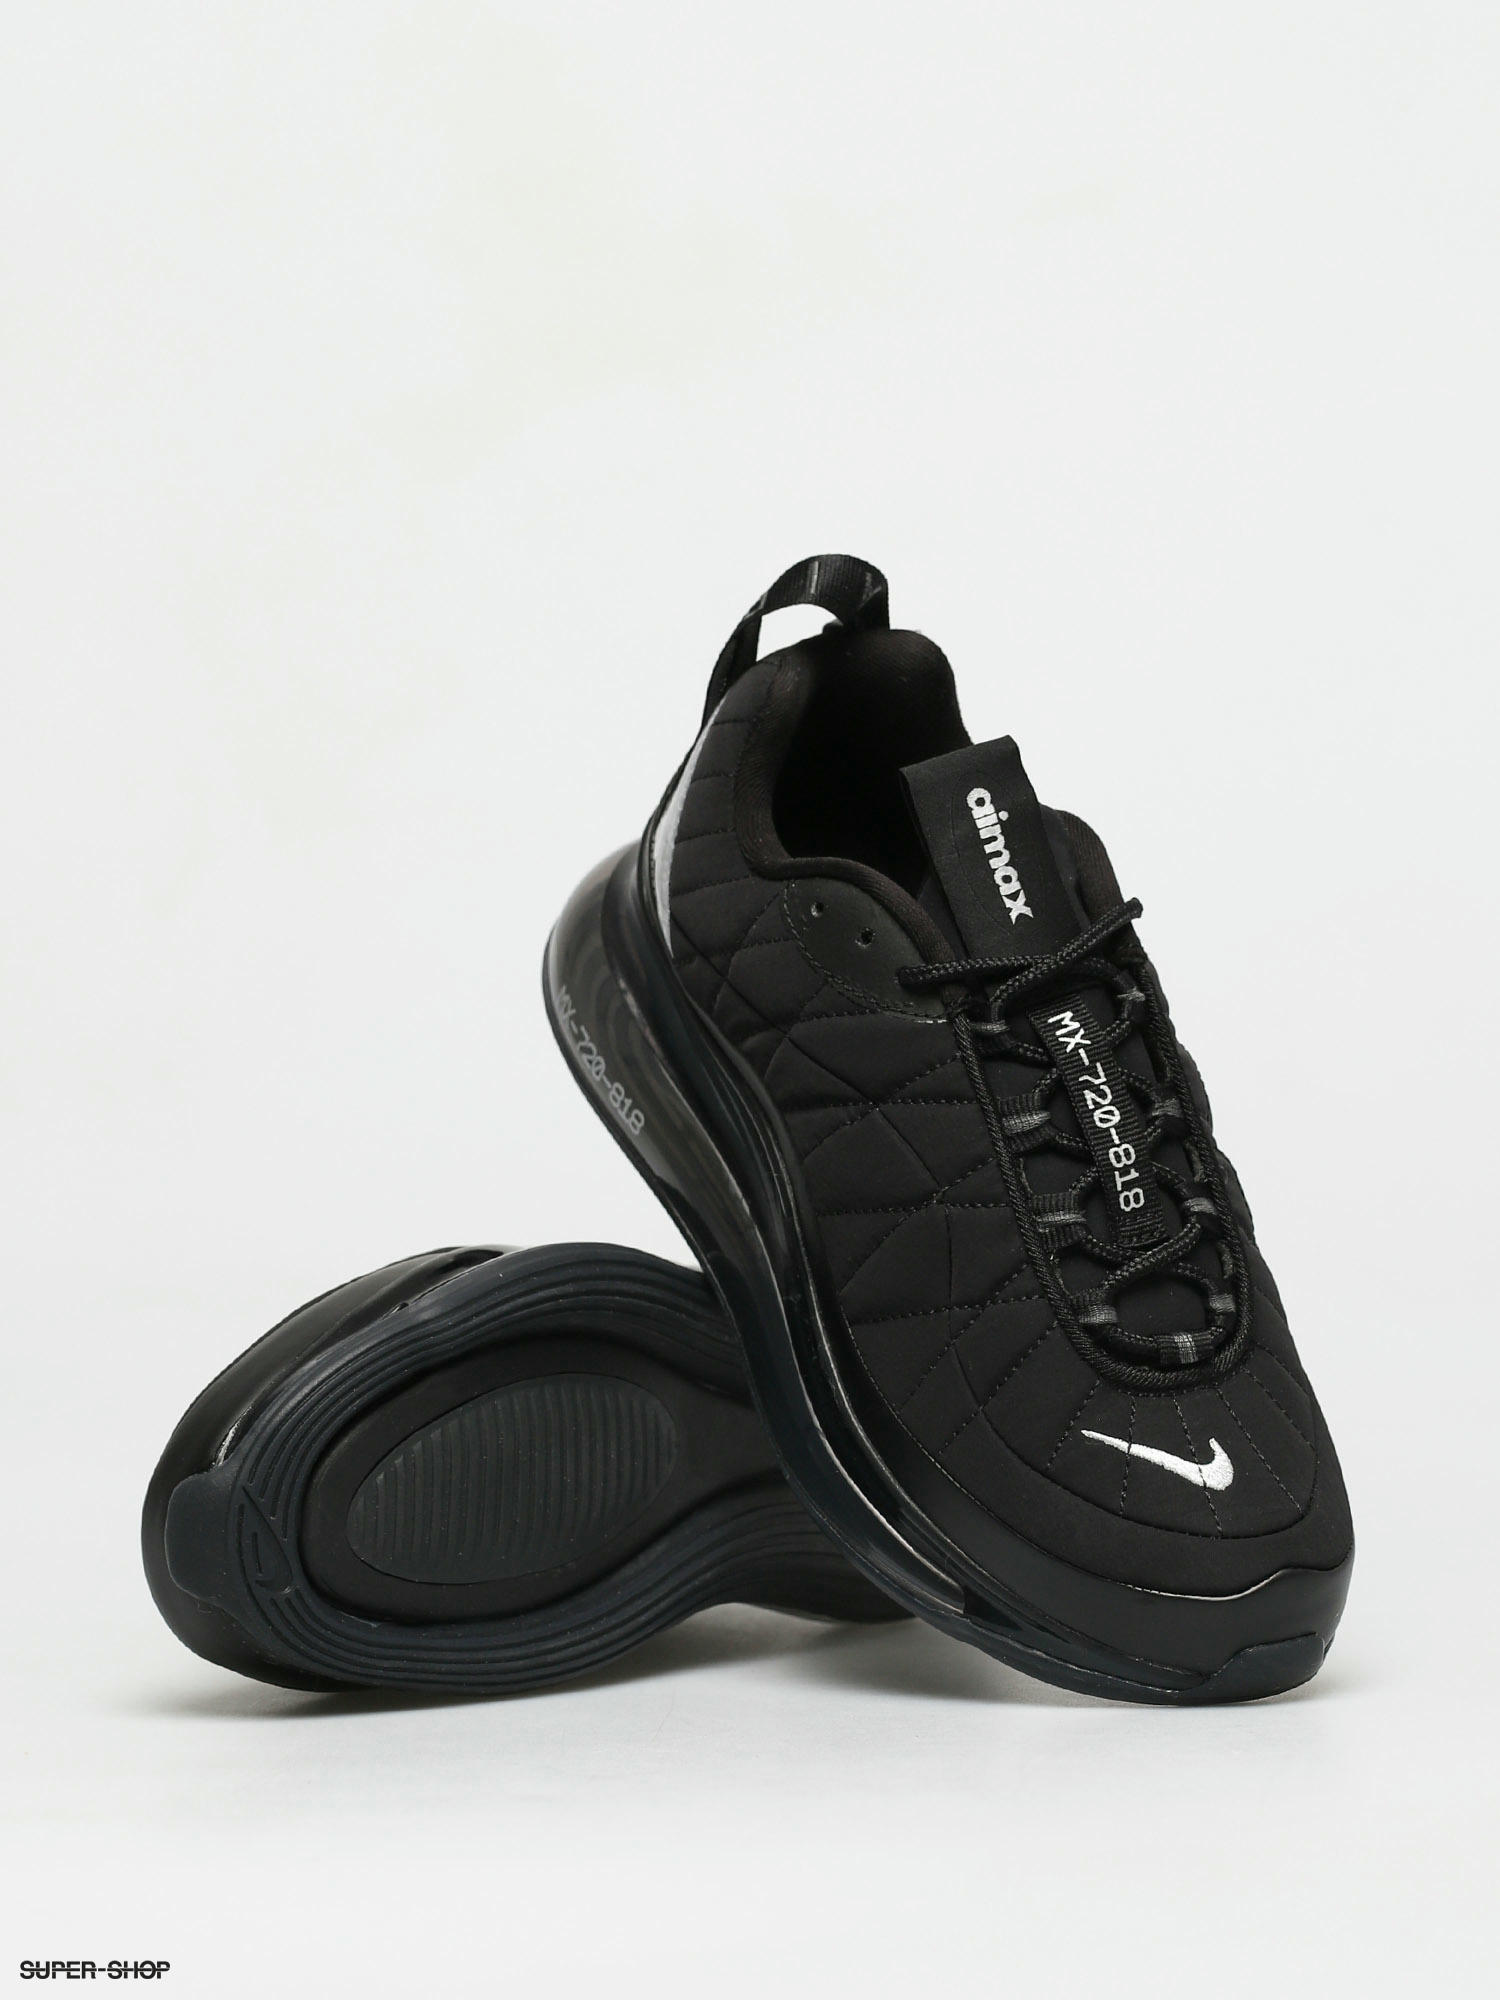 Women's shoes Nike W Mx-720-818 Black/ Metallic Silver-Black